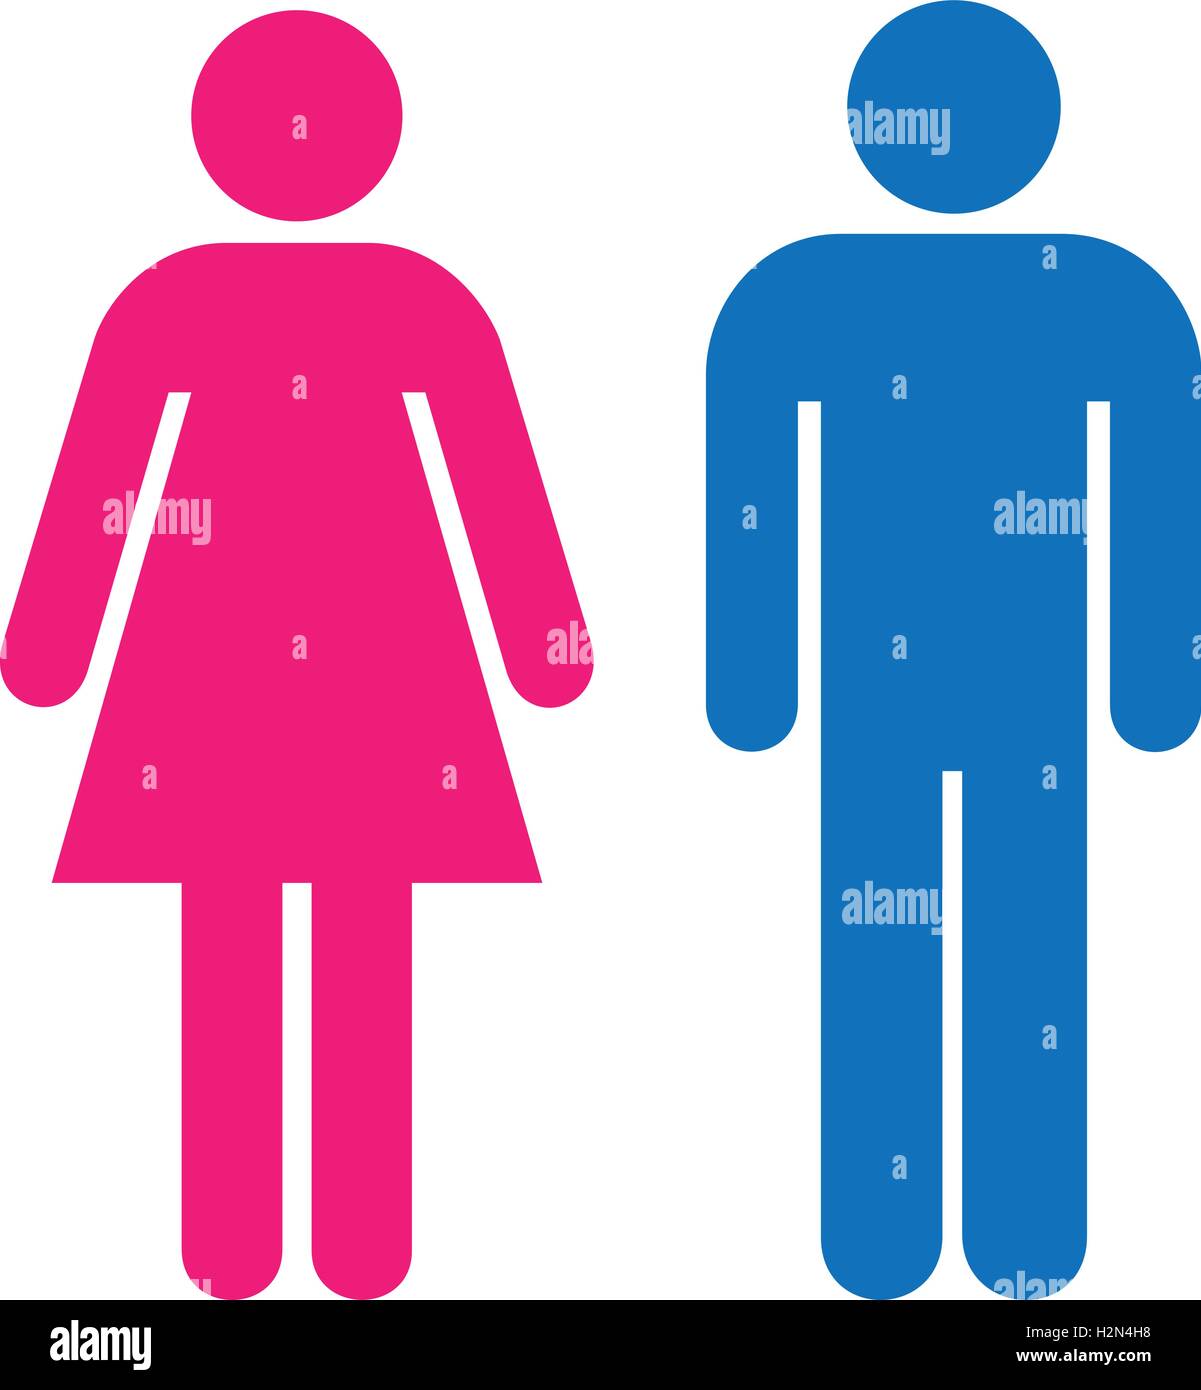 Restroom sign. Un uomo di colore blu e una Pink Lady wc segno. persone icone, isolato illustrazione vettoriale. Illustrazione Vettoriale